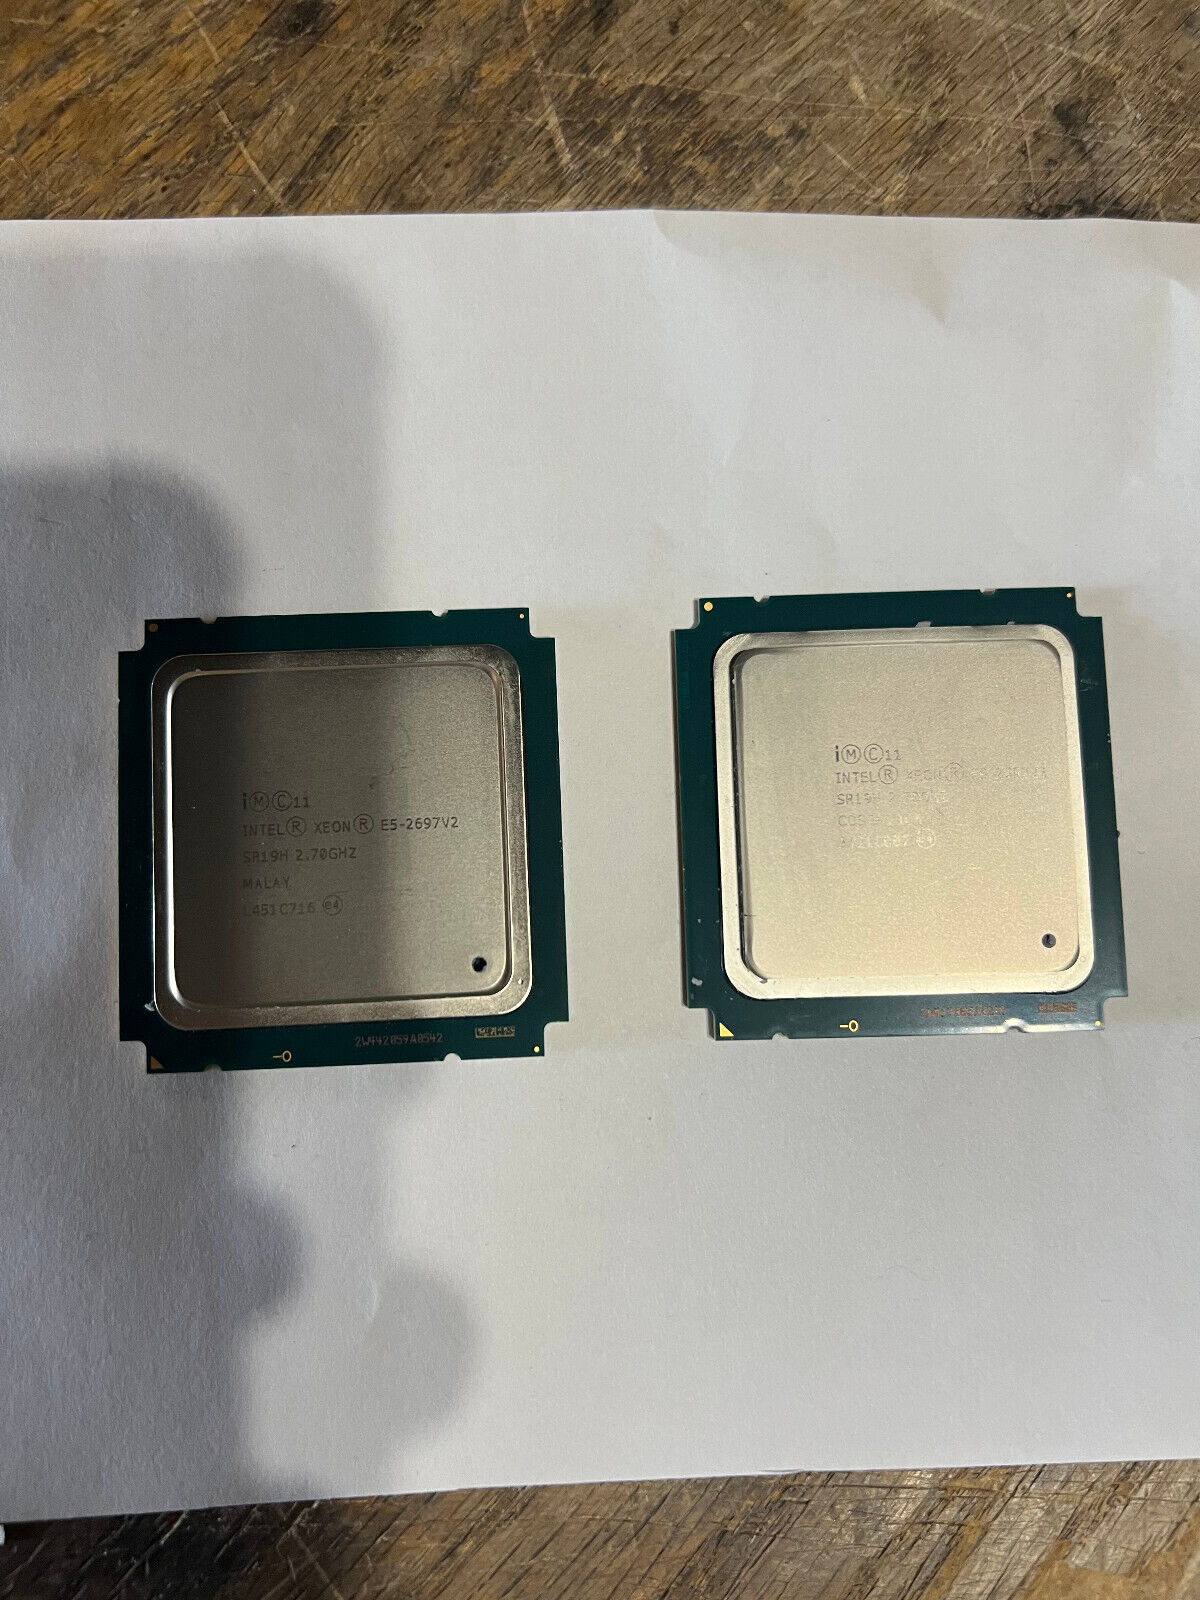 Matched Pair (2x) Intel Xeon E5-2697 v2 SR19H 2.7GHz LGA